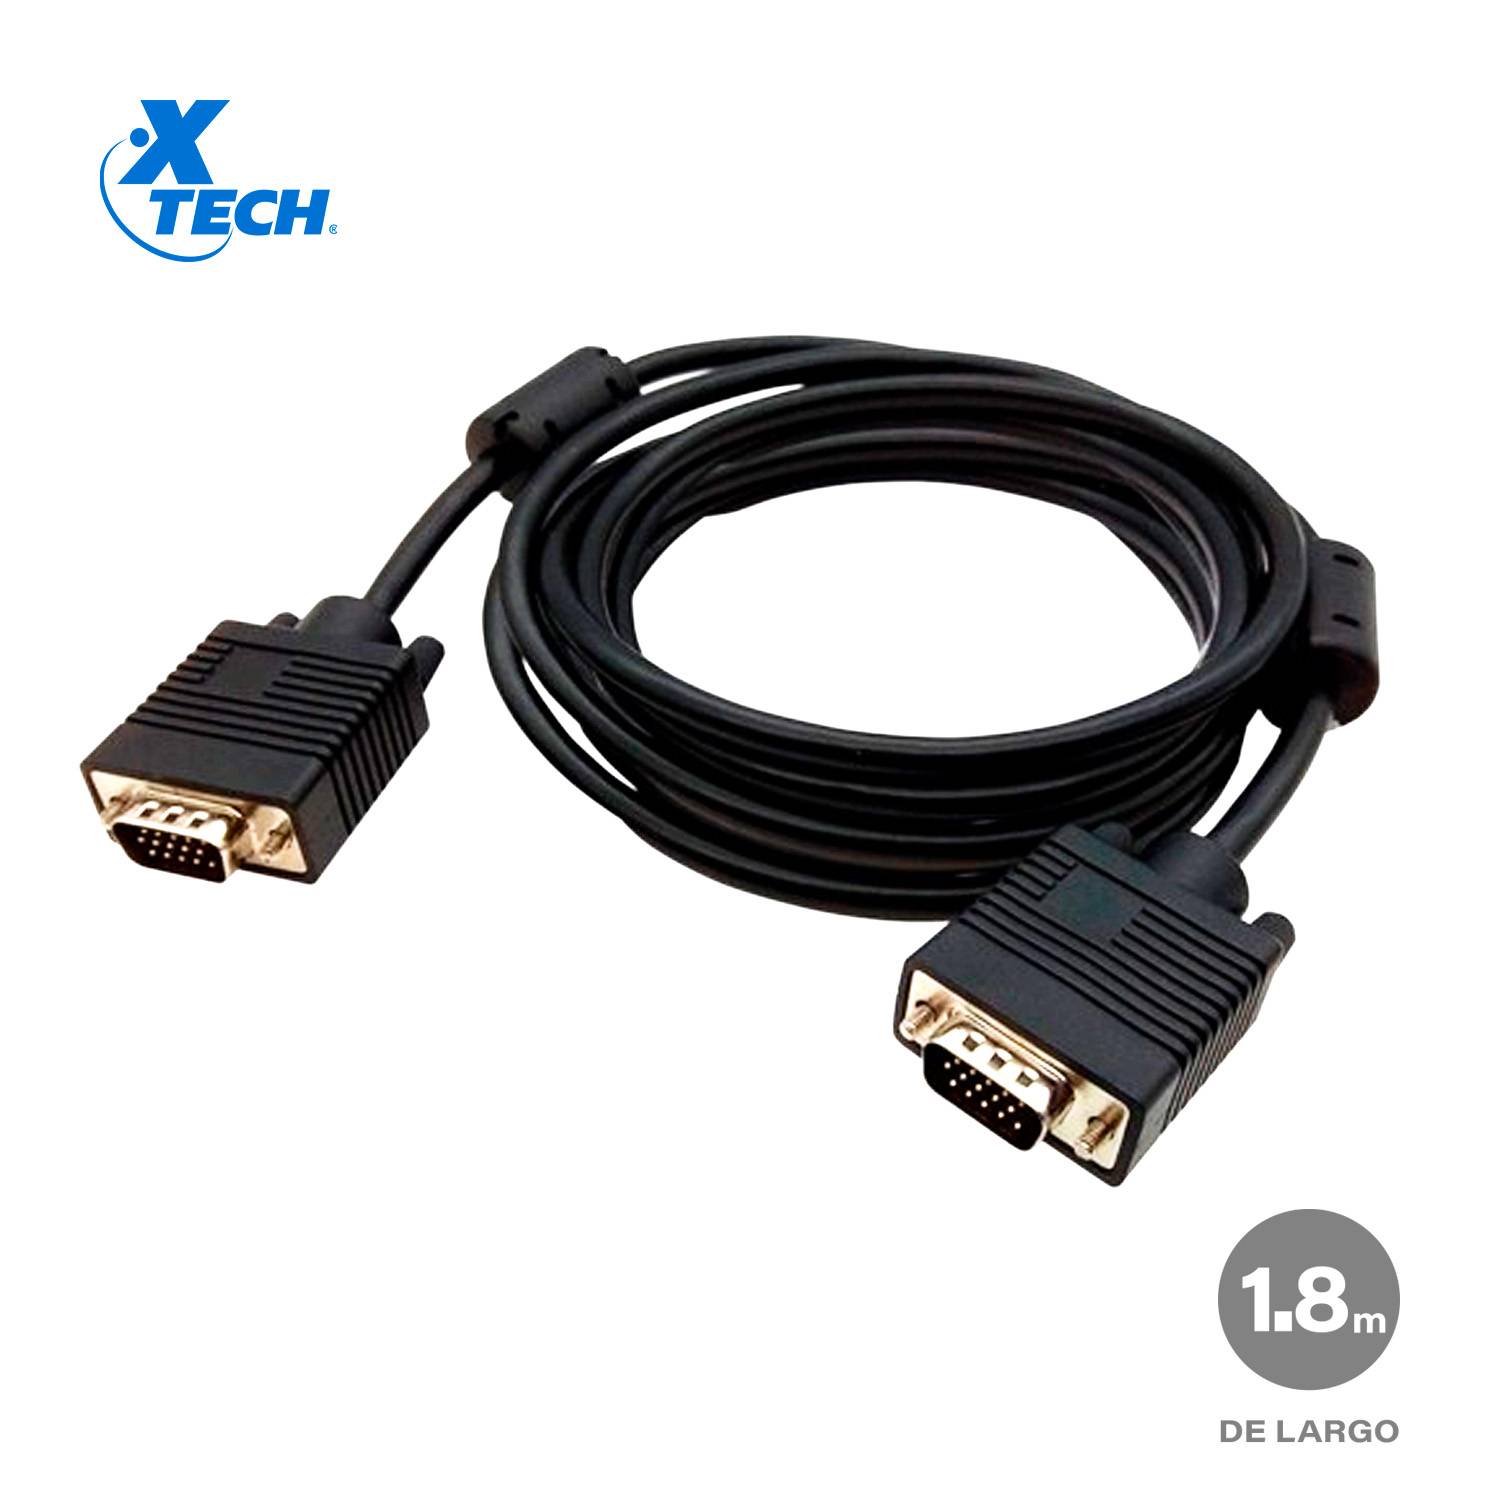 Cable VGA Macho a VGA Macho XTECH XTC-308 Resolución 720p 18m